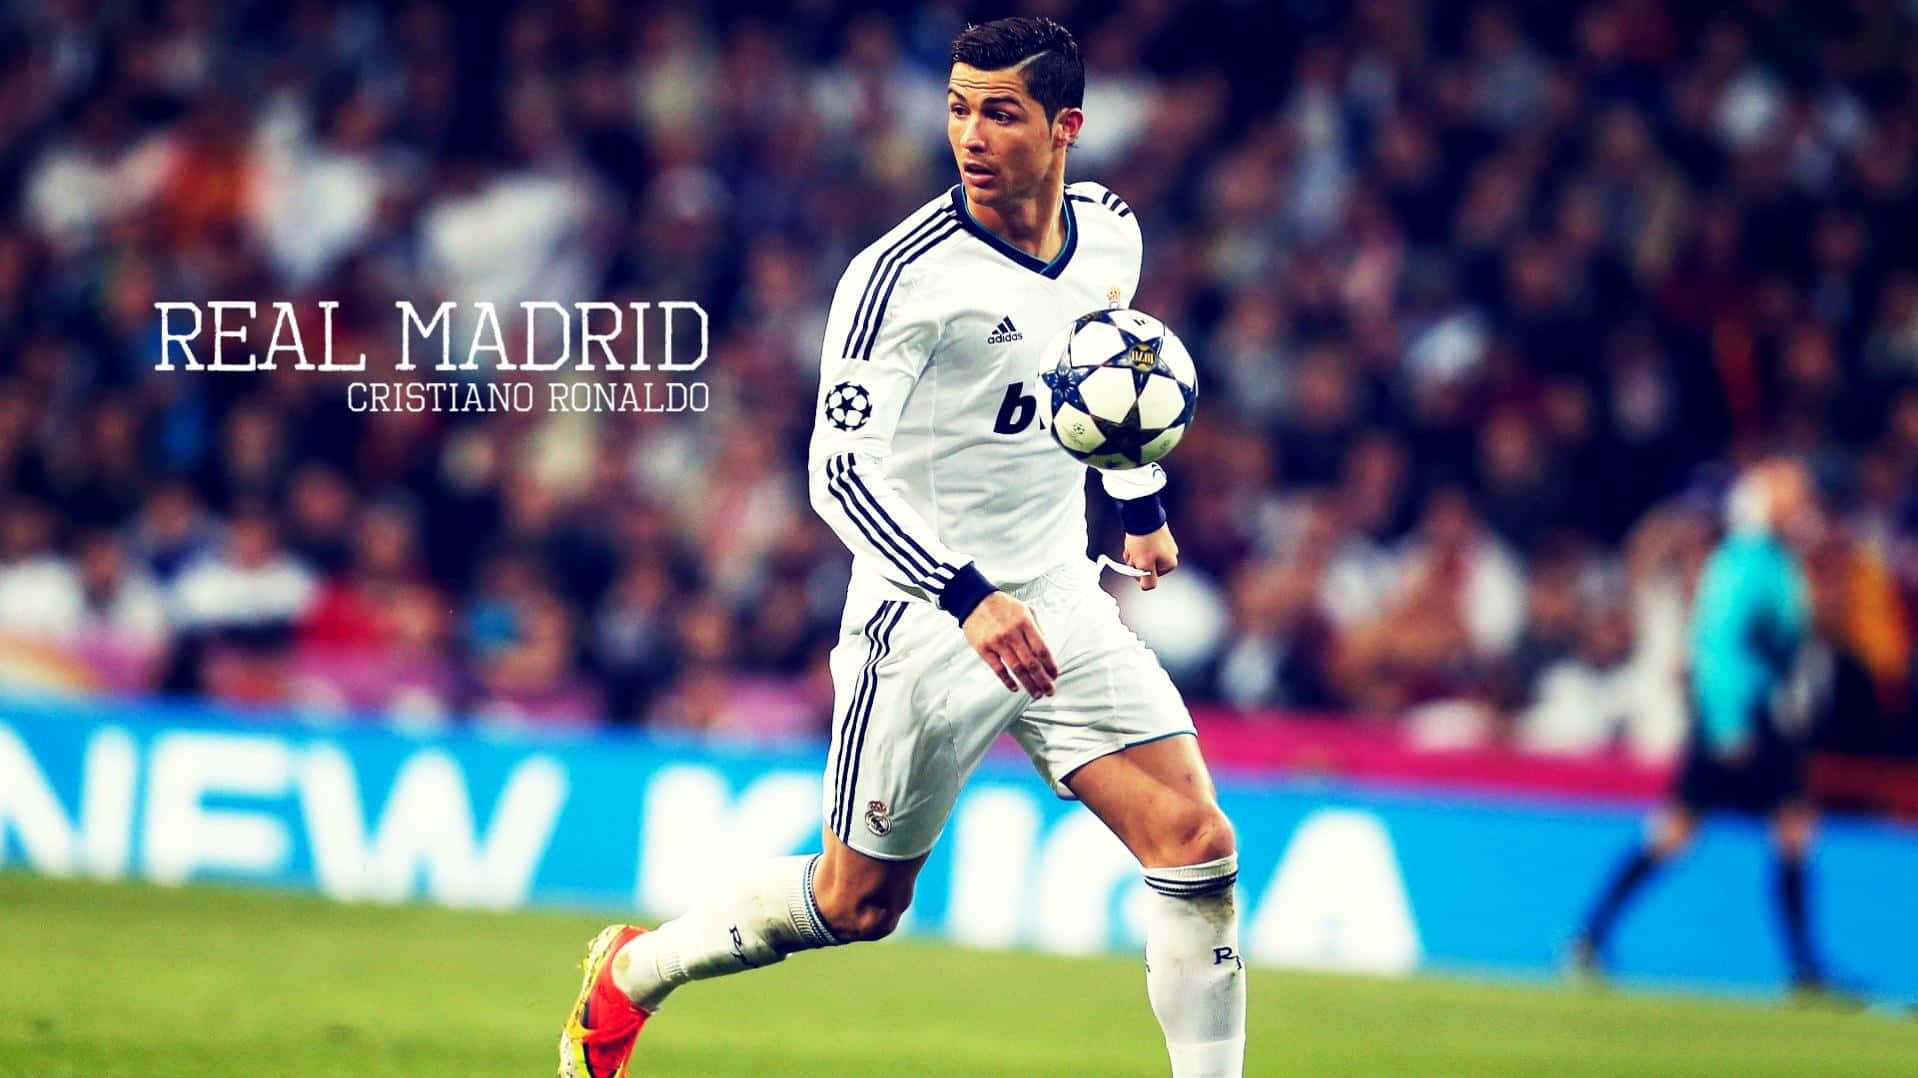 Världskändafotbollsspelaren Cristiano Ronaldo